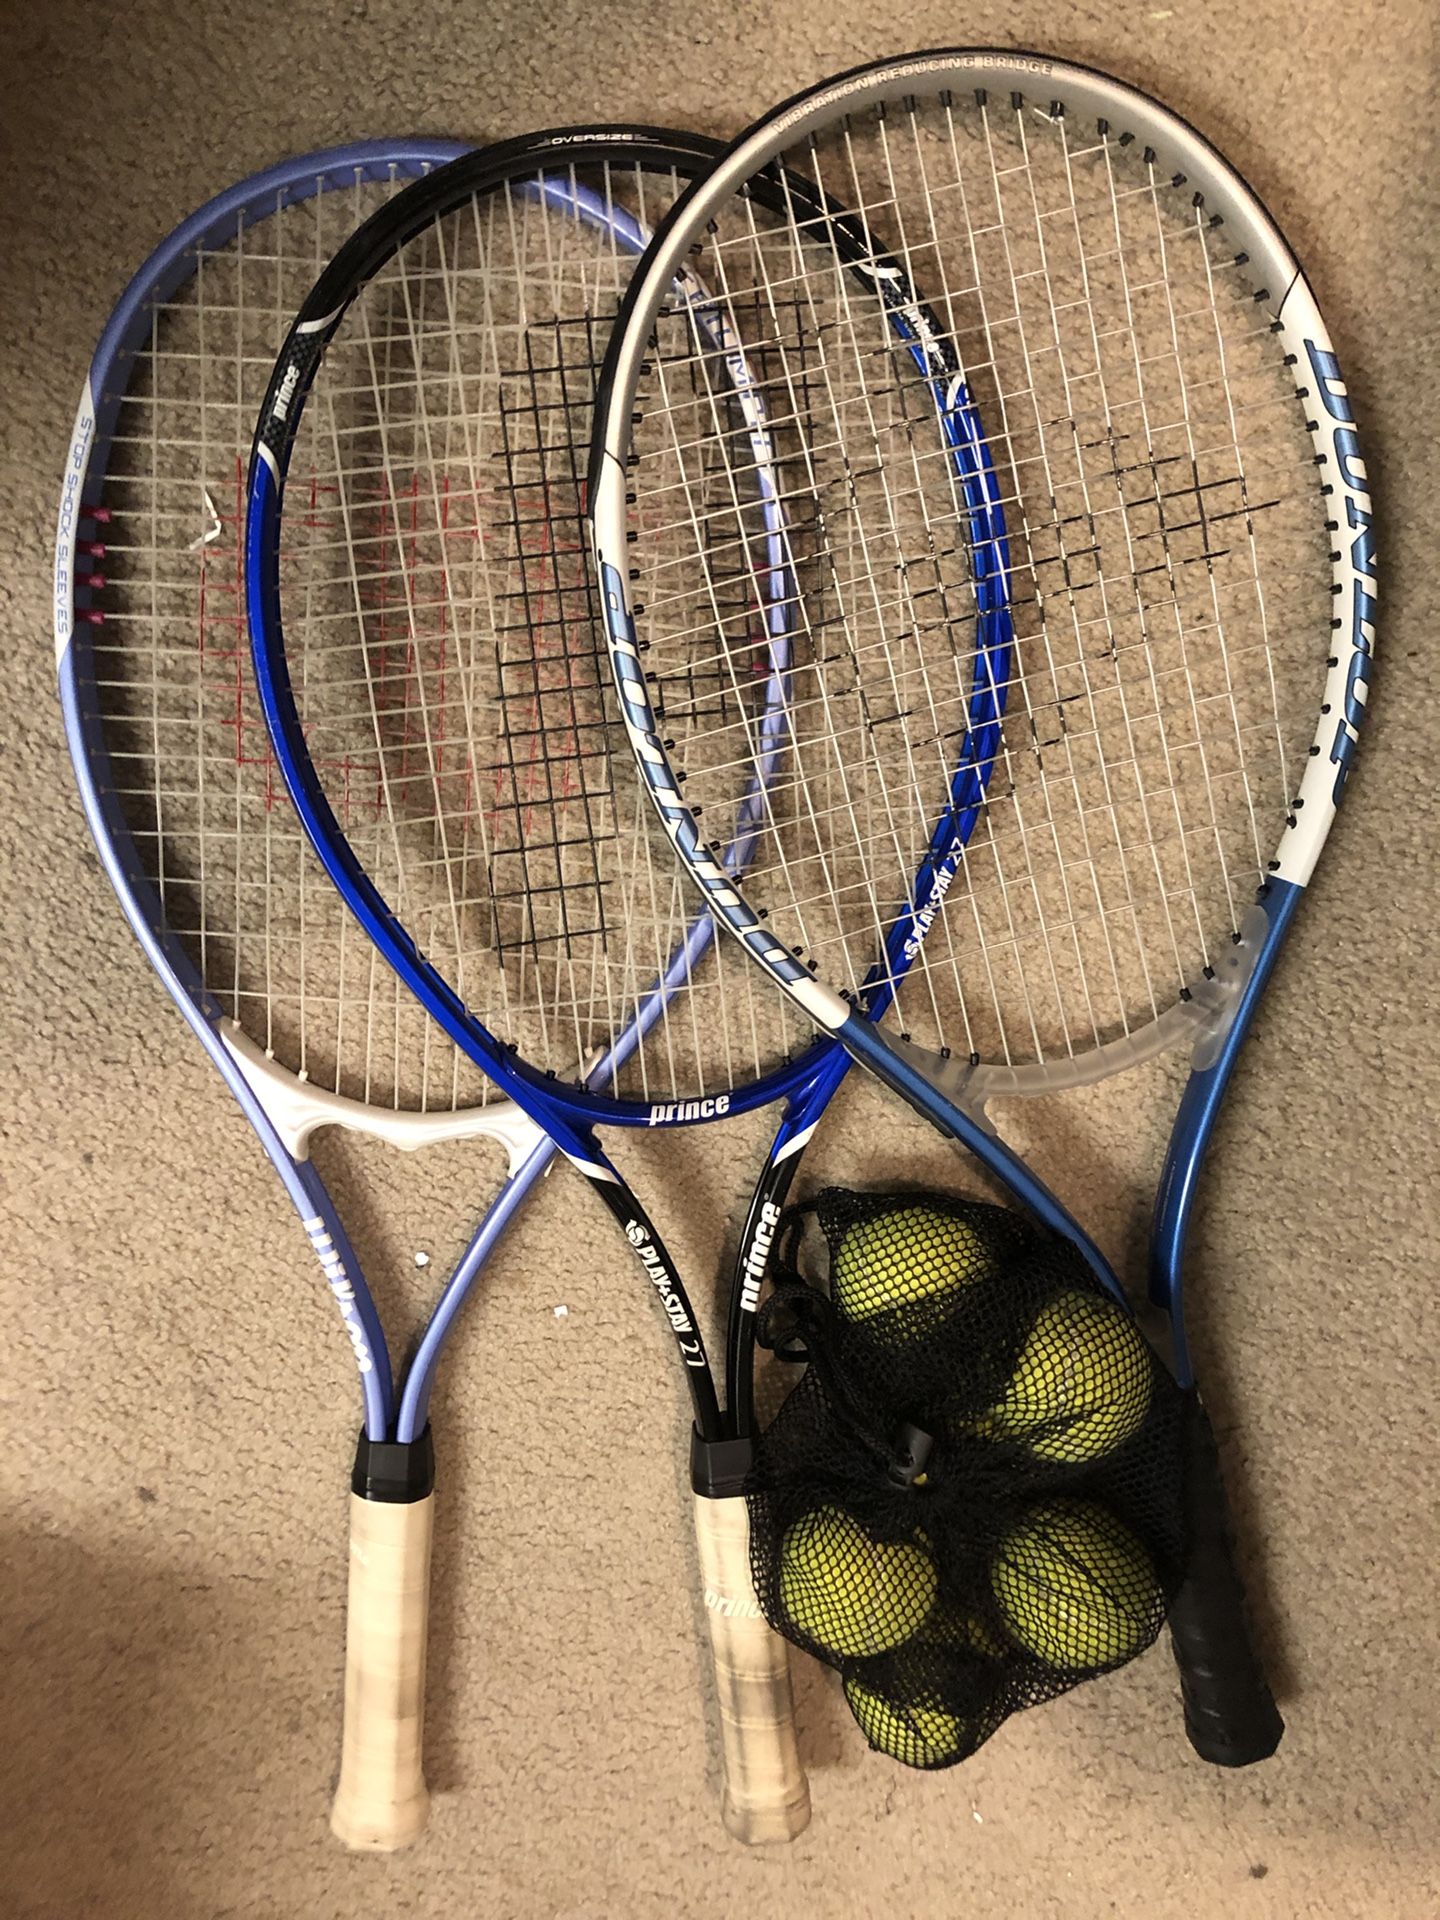 3 Tennis racket + tennis balls